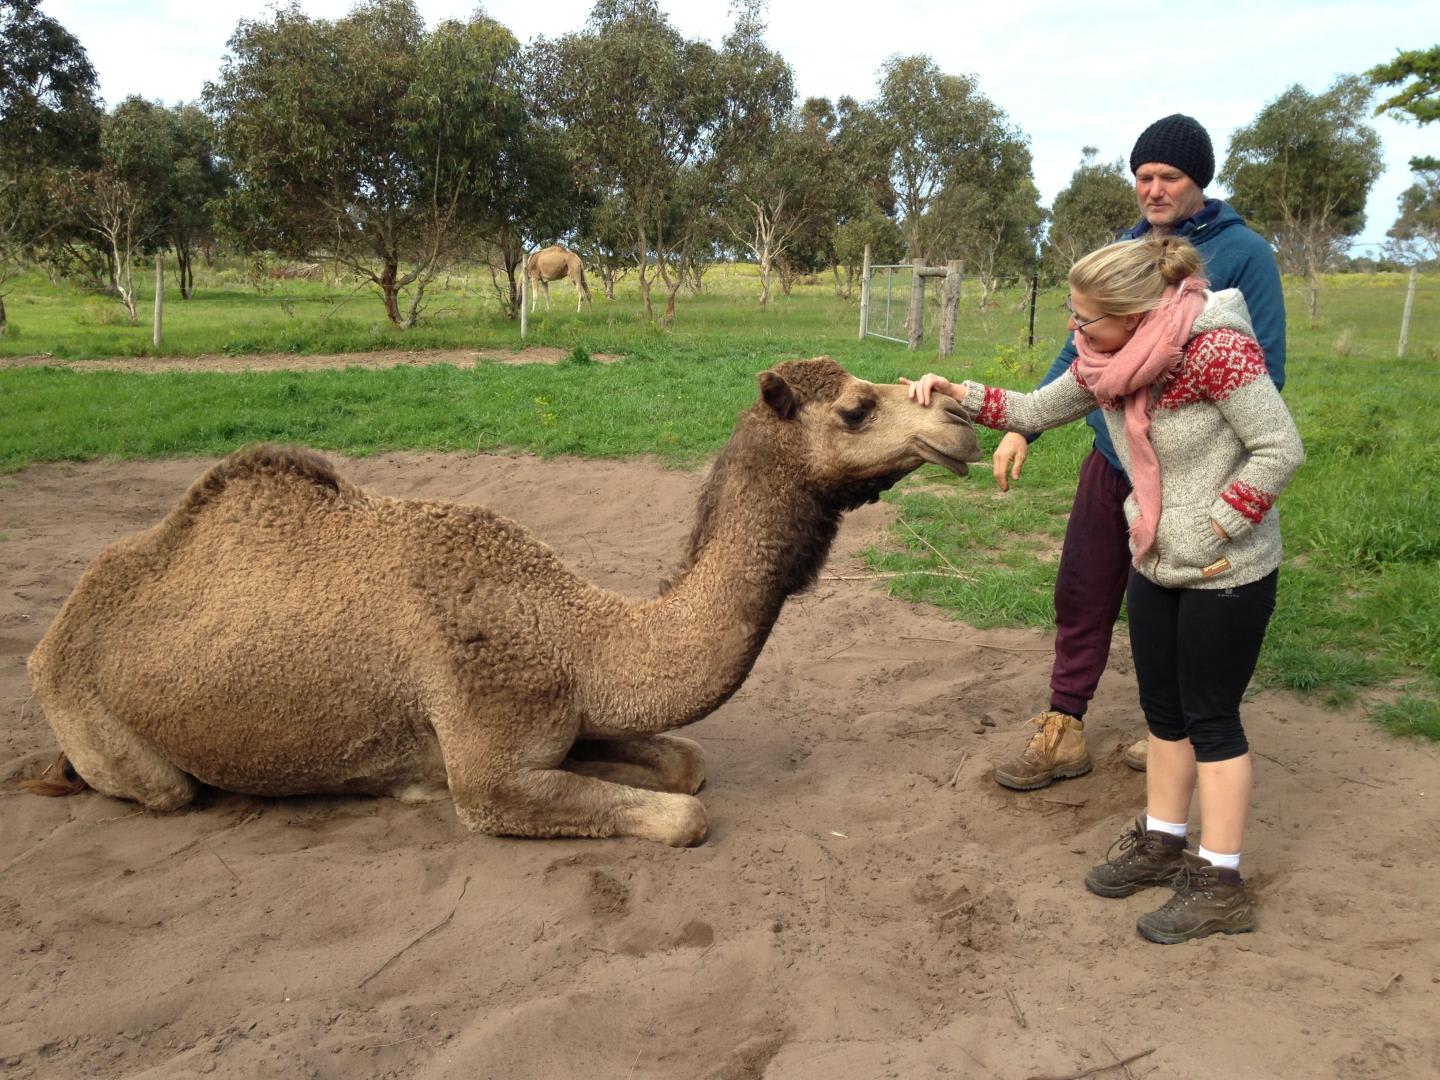 Camel encounters